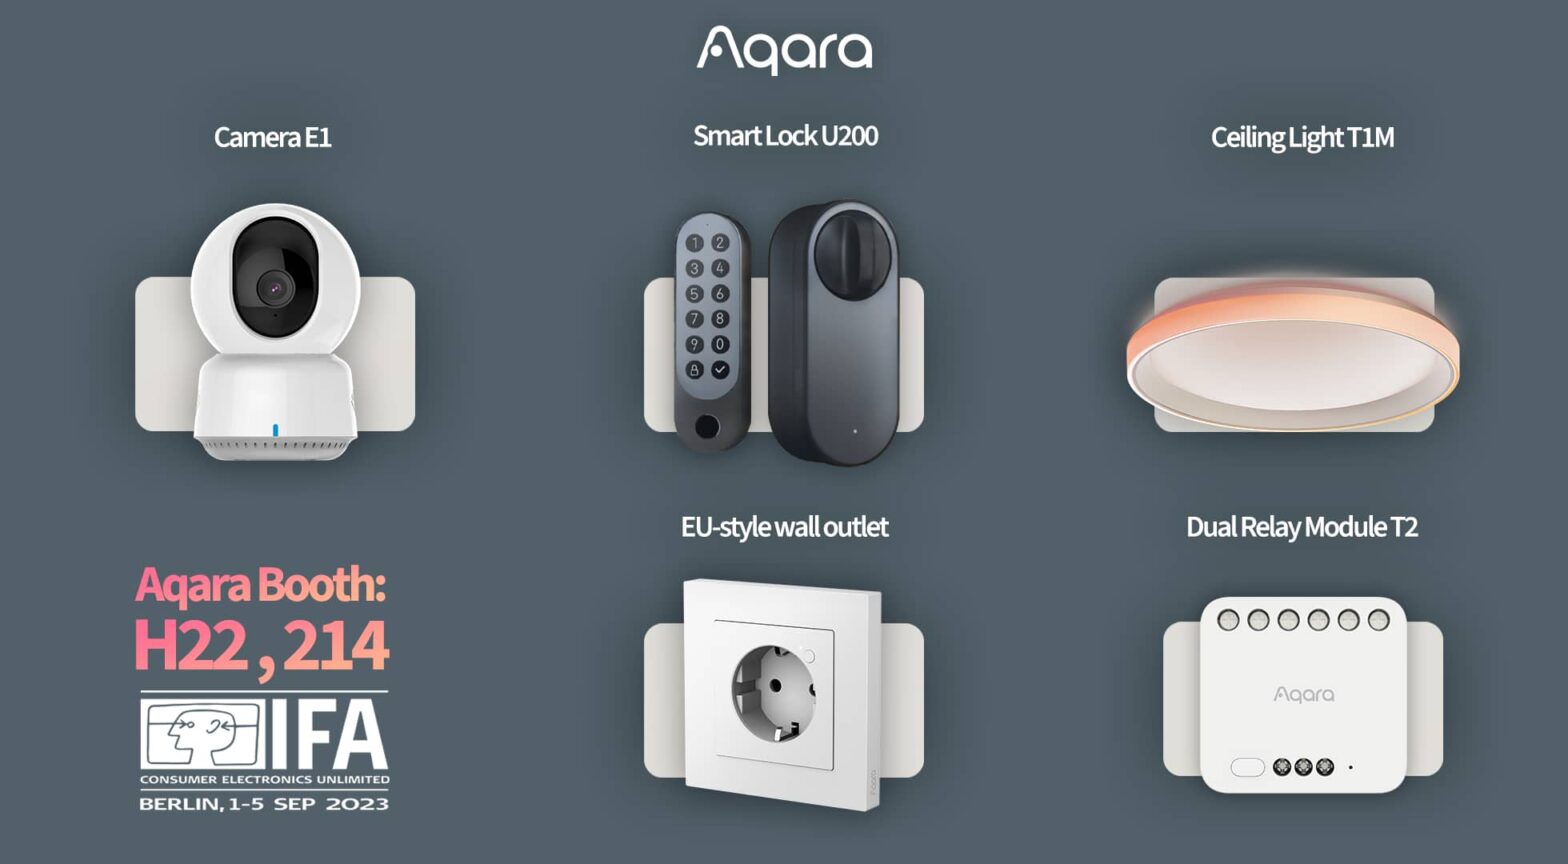 Aqara debuts new Matter-compatible Smart Home Products at IFA 2023